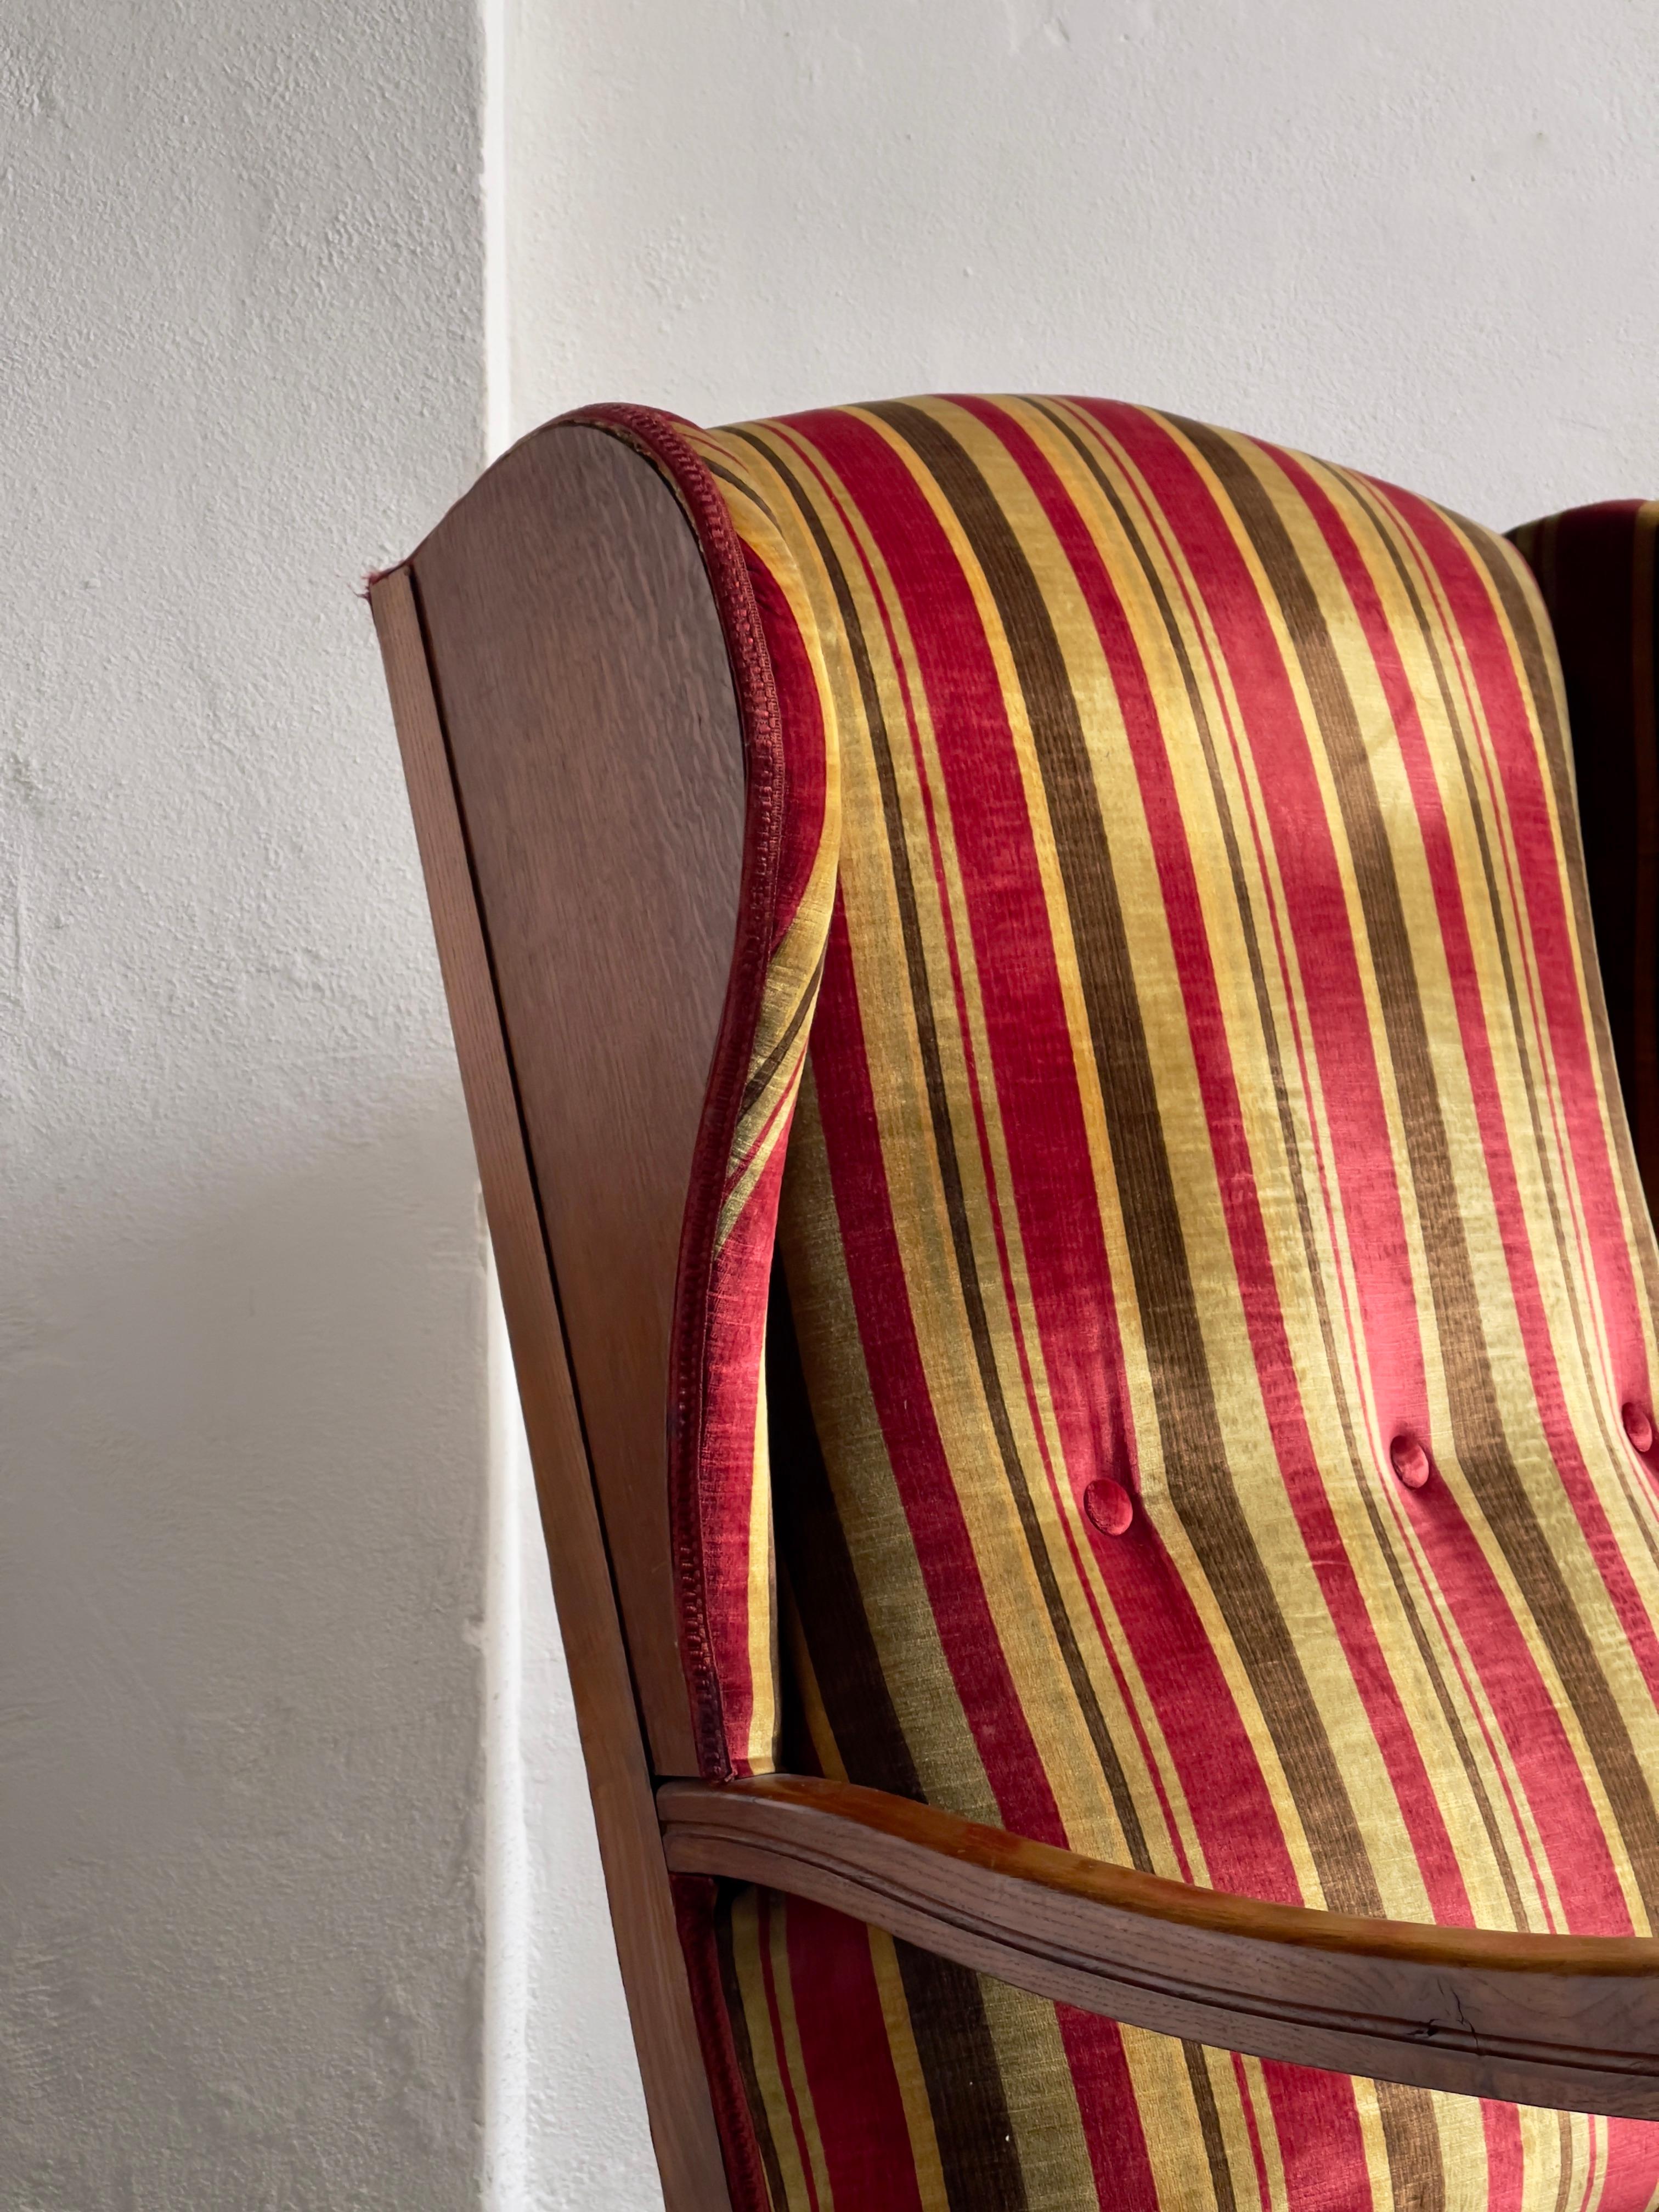 Fauteuil de salon ou fauteuil à oreilles en chêne massif fabriqué par un ébéniste danois dans les années 1930 et recouvert du plus beau et rare velours de coton pur de première qualité avec d'élégantes rayures rouges, vertes d'olive et dorées. Ce